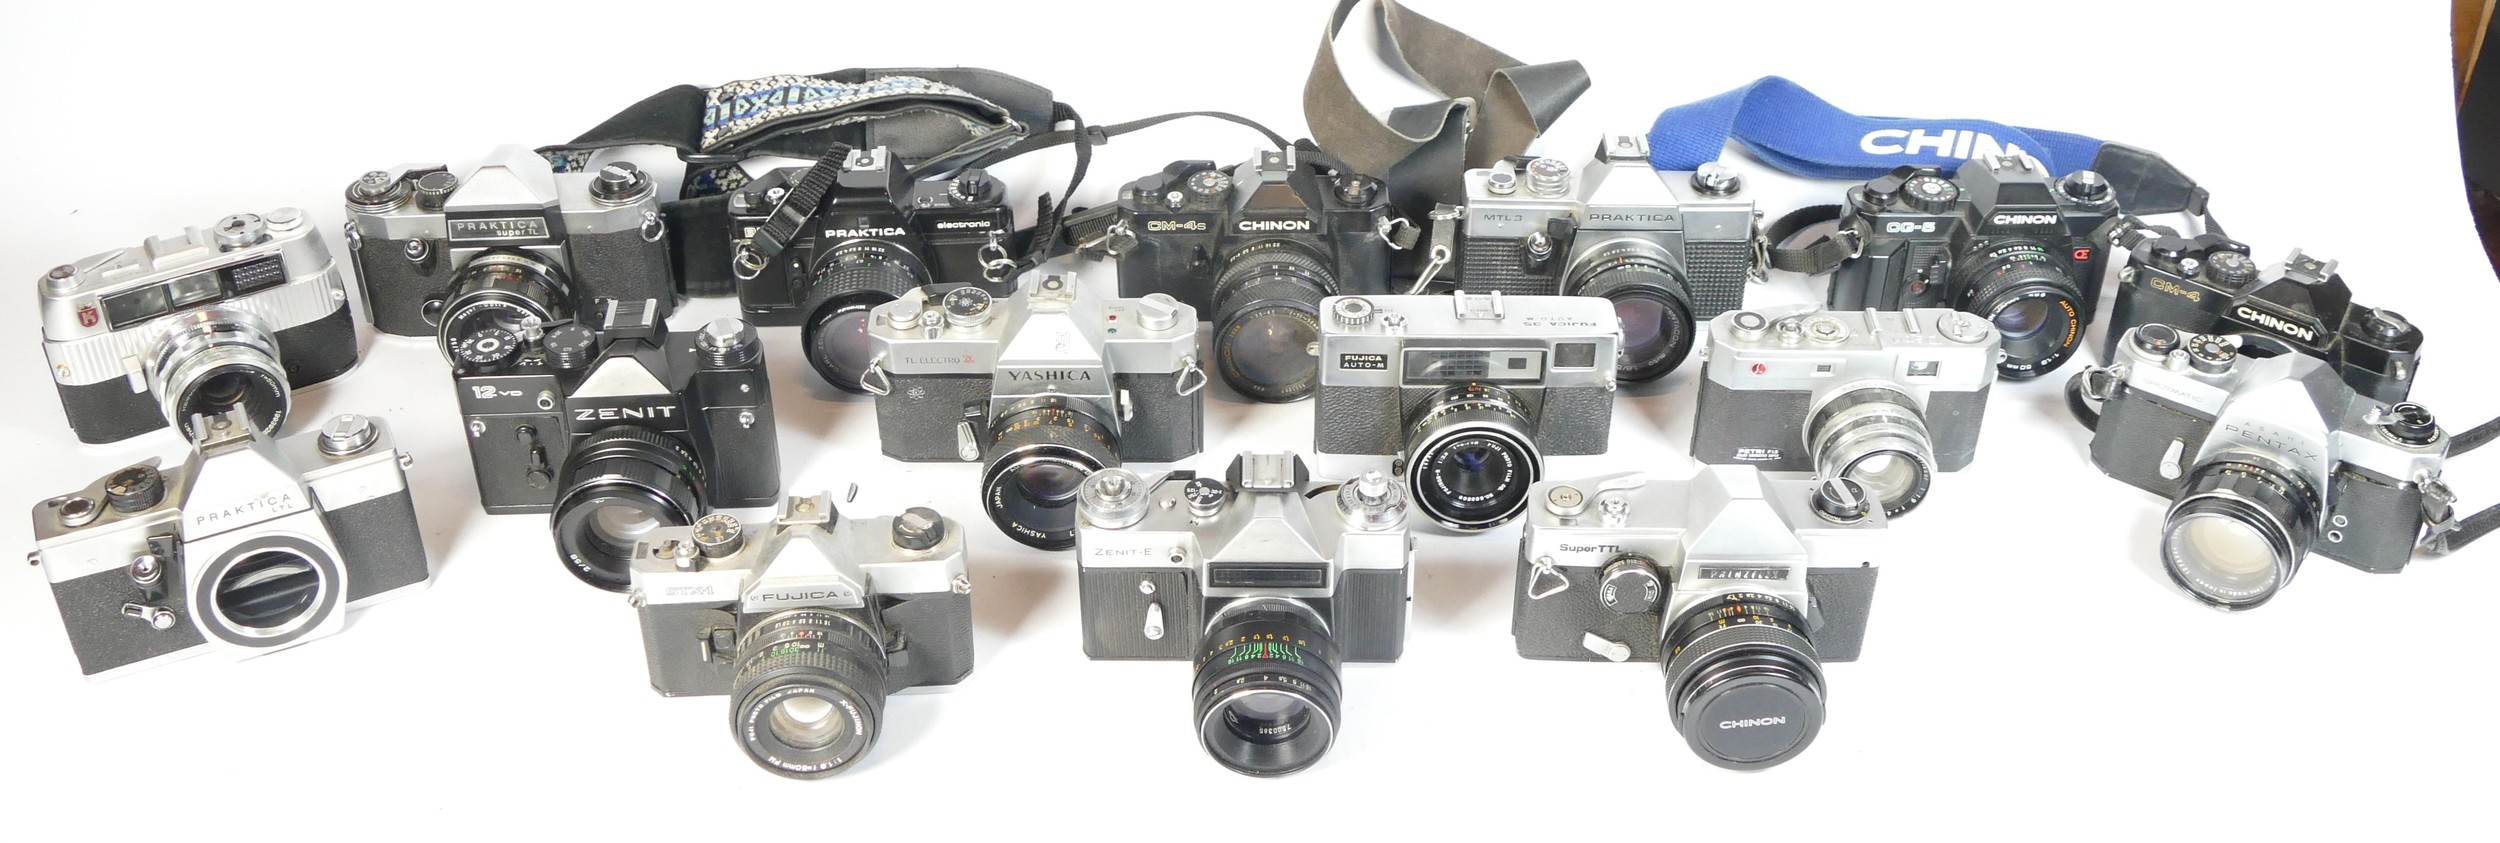 Twenty one SLR vintage film cameras to include a Praktica LB, a Fujica STX-1, a Chinon CM4S, and a